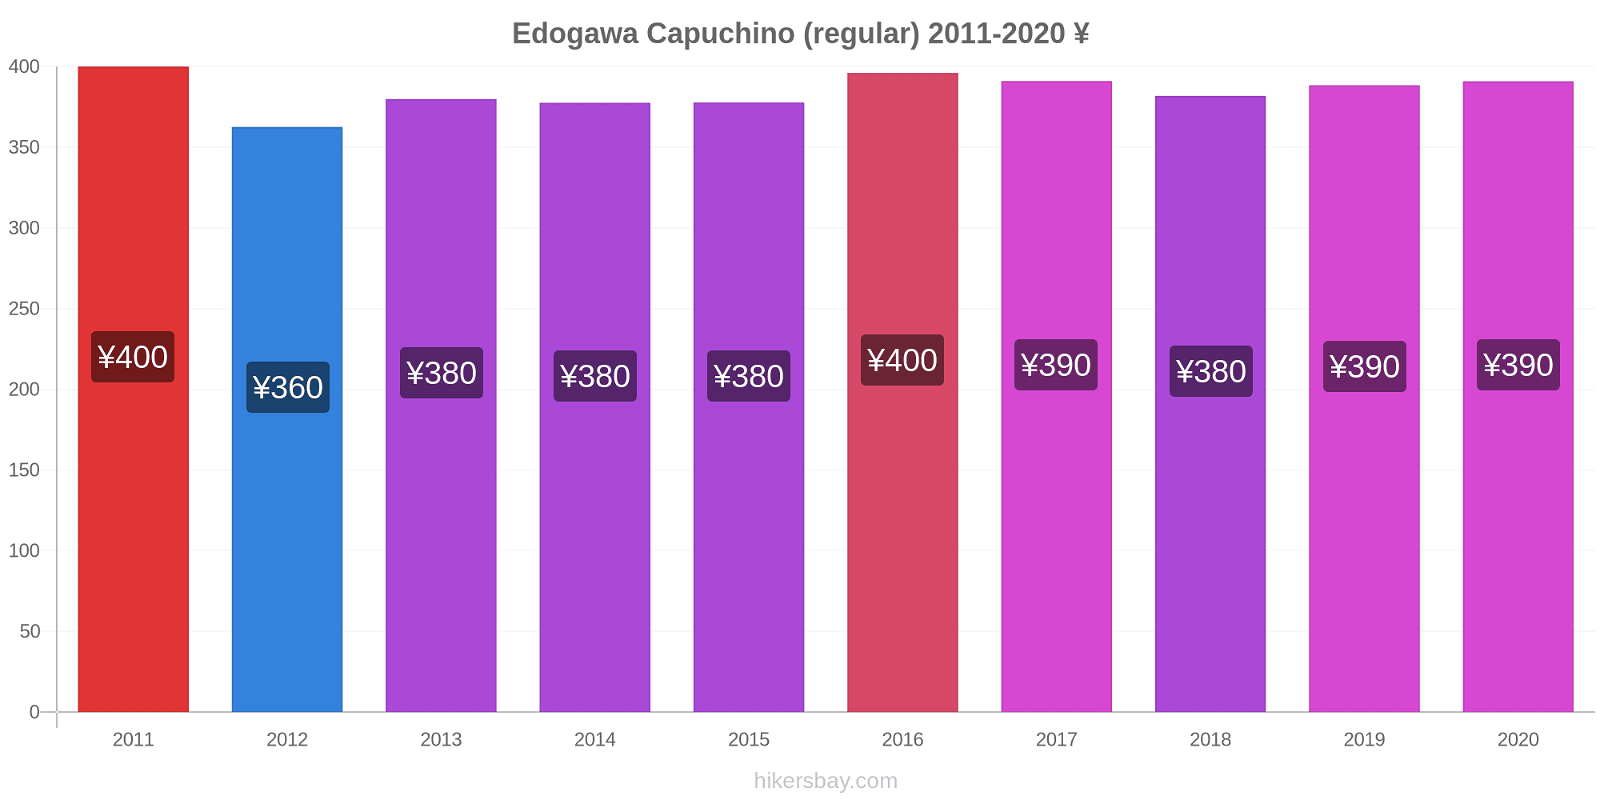 Edogawa cambios de precios Capuchino (regular) hikersbay.com